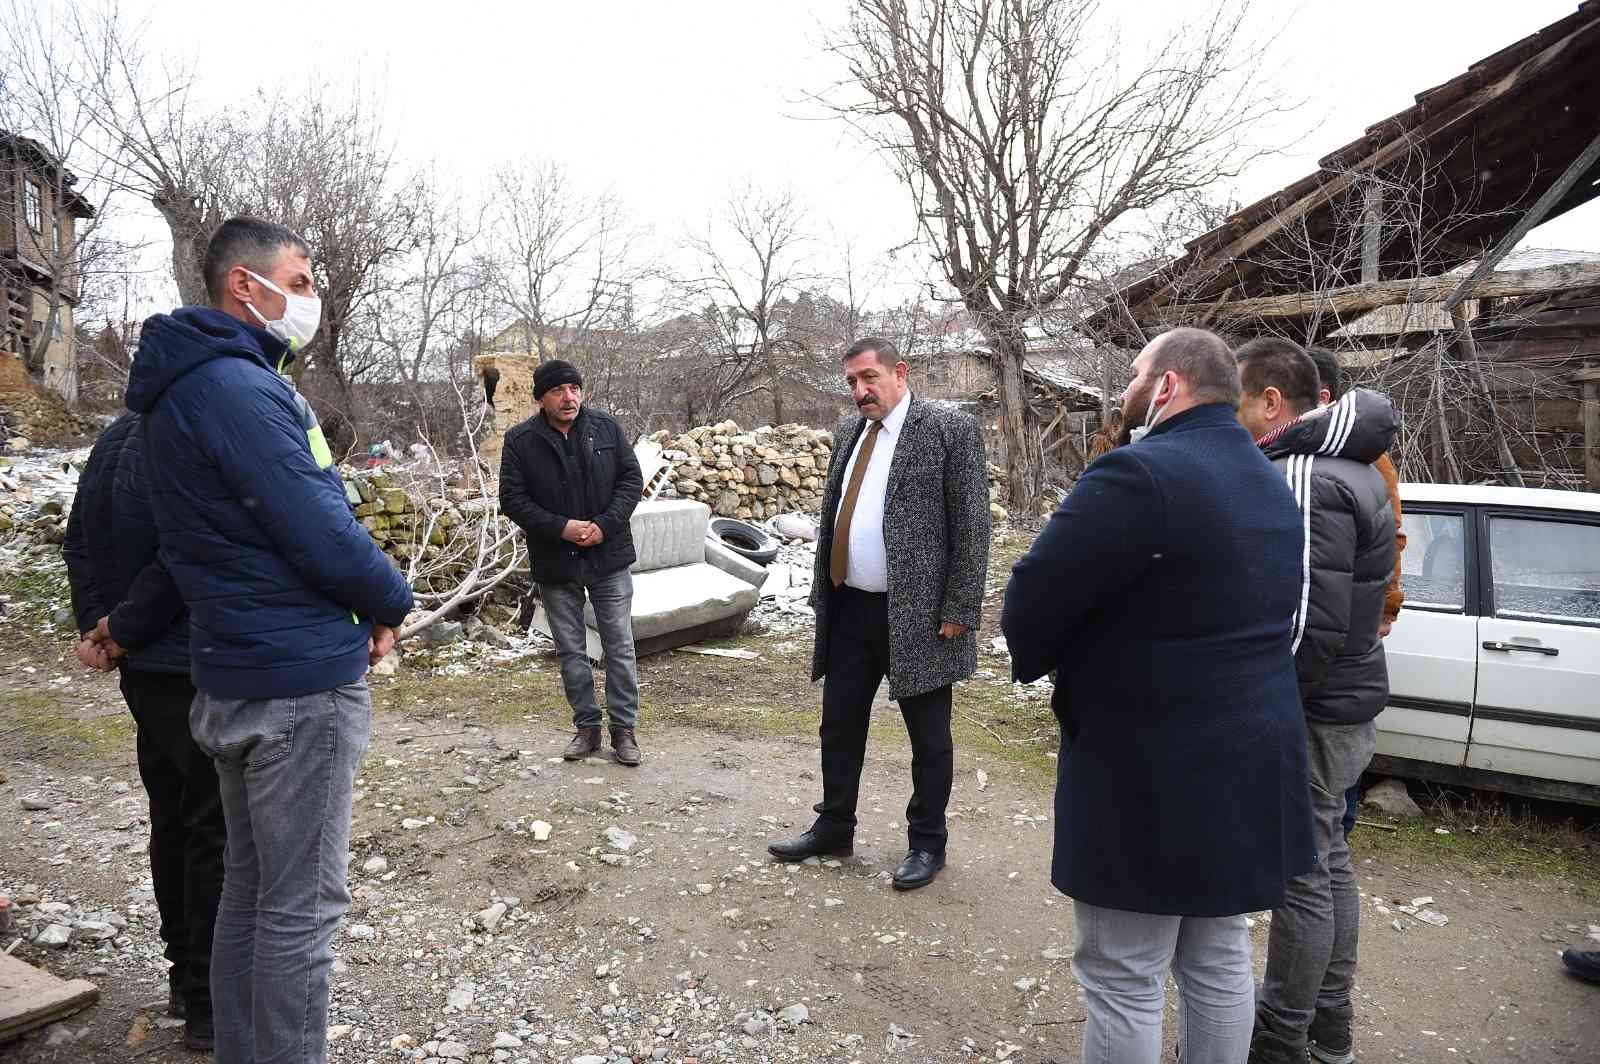 Başkan Vidinlioğlu, evi yanan aileyi ziyaret etti #kastamonu